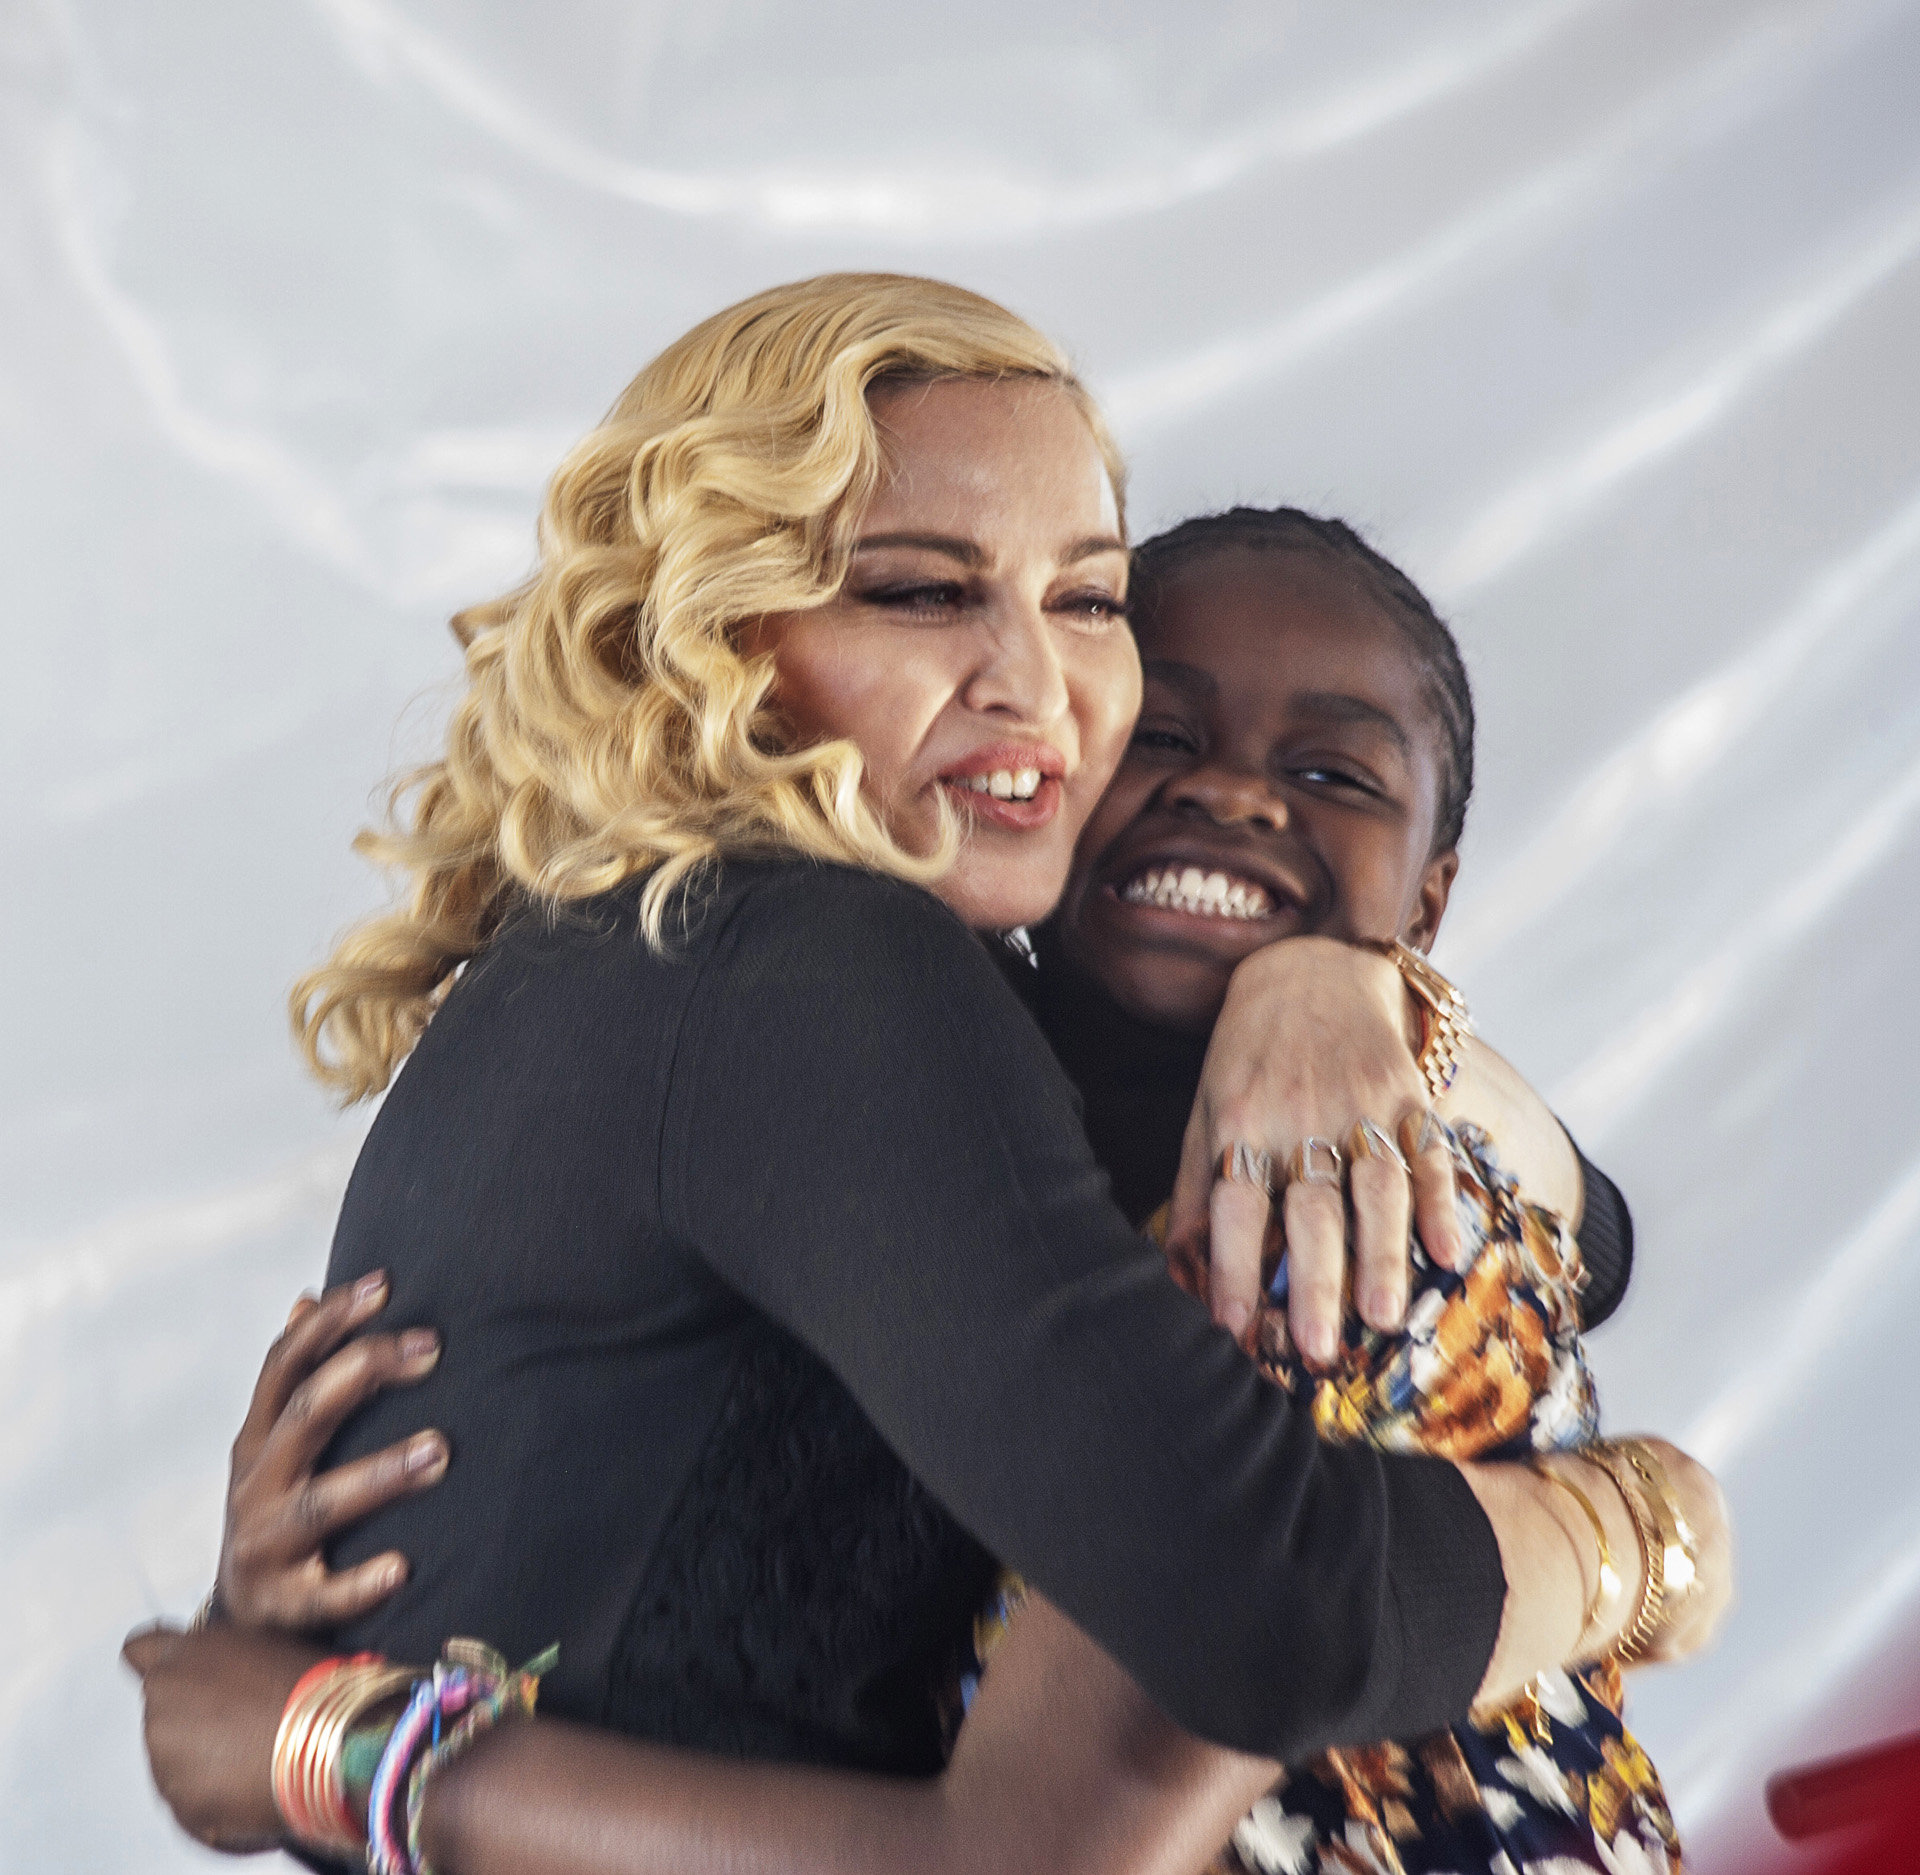 Interesada por las causas humanitarias, Madonna emprendió un camino de solidario con acciones beneficas por África, donde adoptó a Mercy